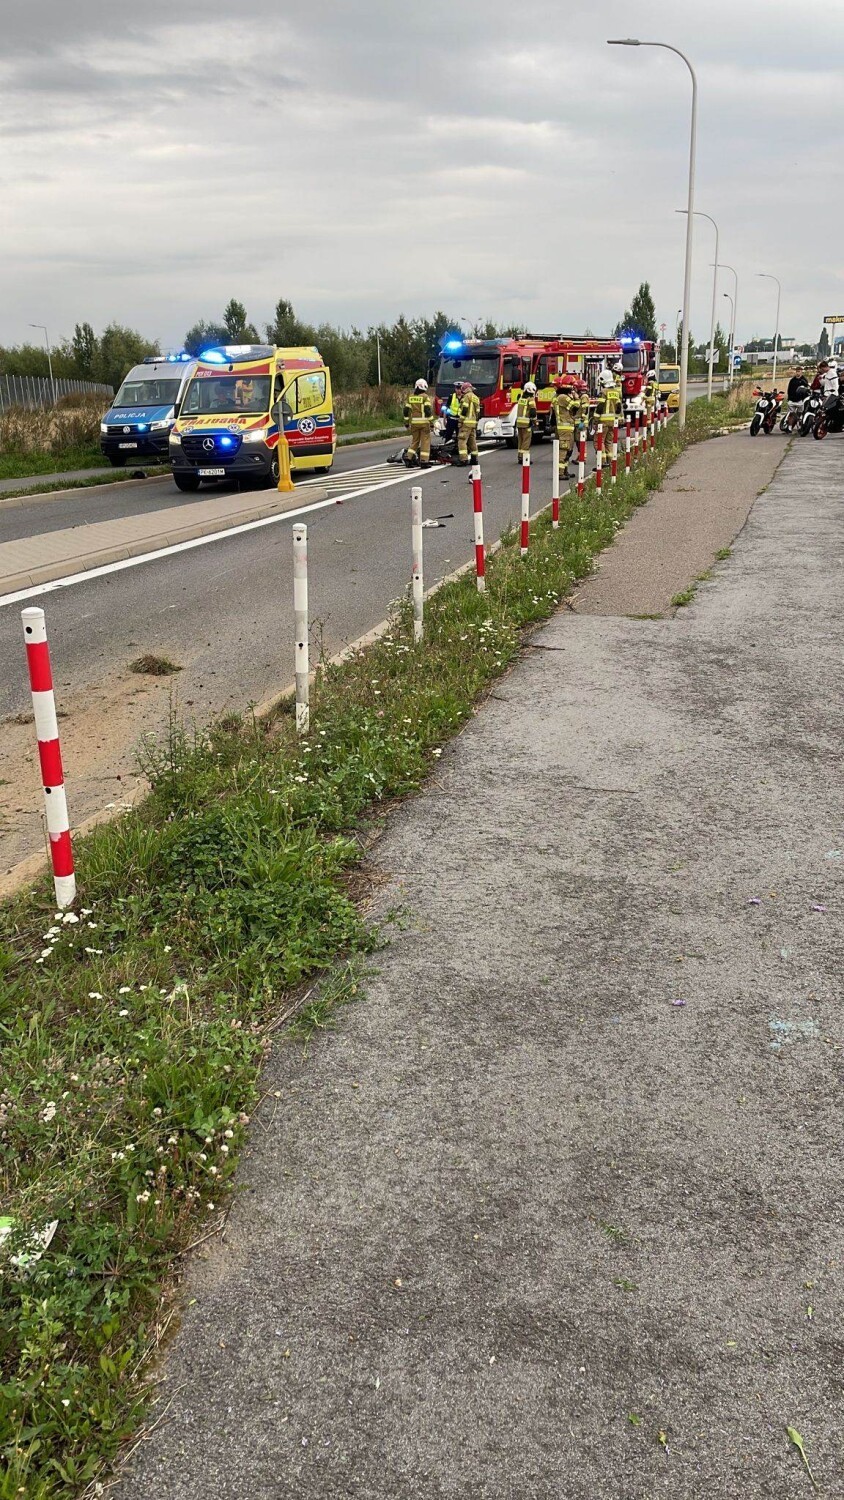 Wypadek z udziałem motocyklisty w Kaliszu. 48-latek był pijany! 